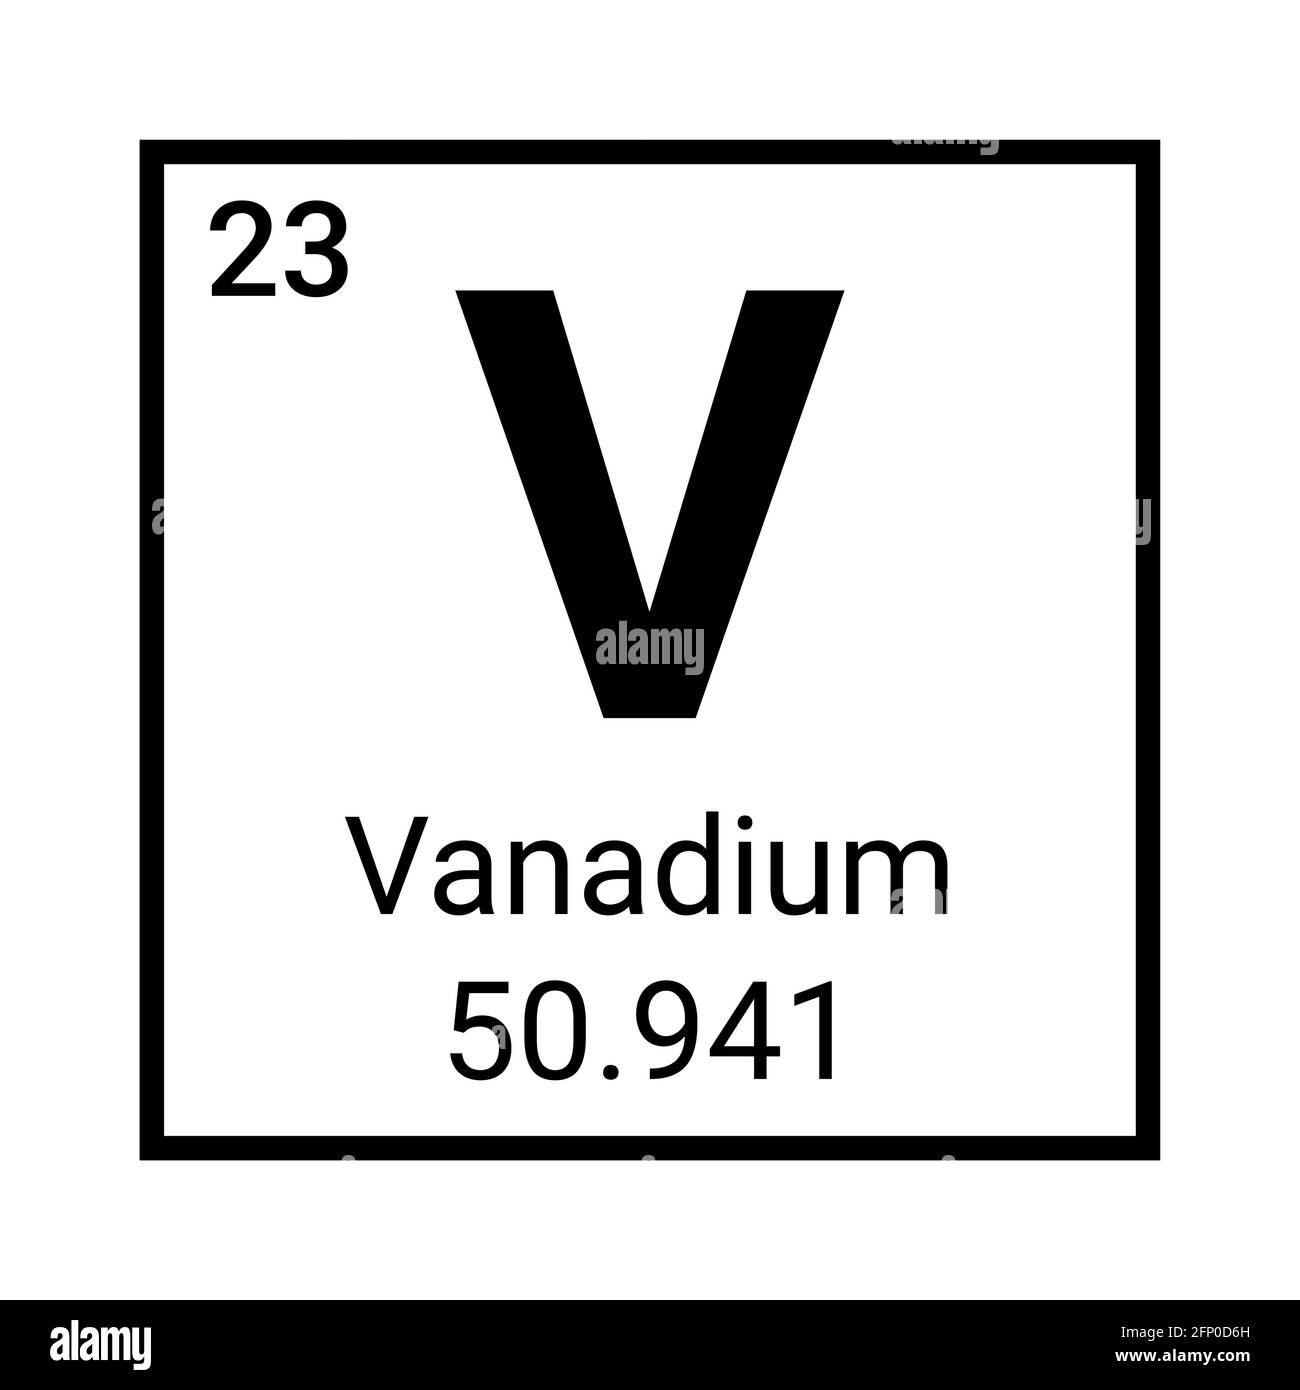 Vanadium periodic table element icon. Vanadium symbol science vector chemical element Stock Vector